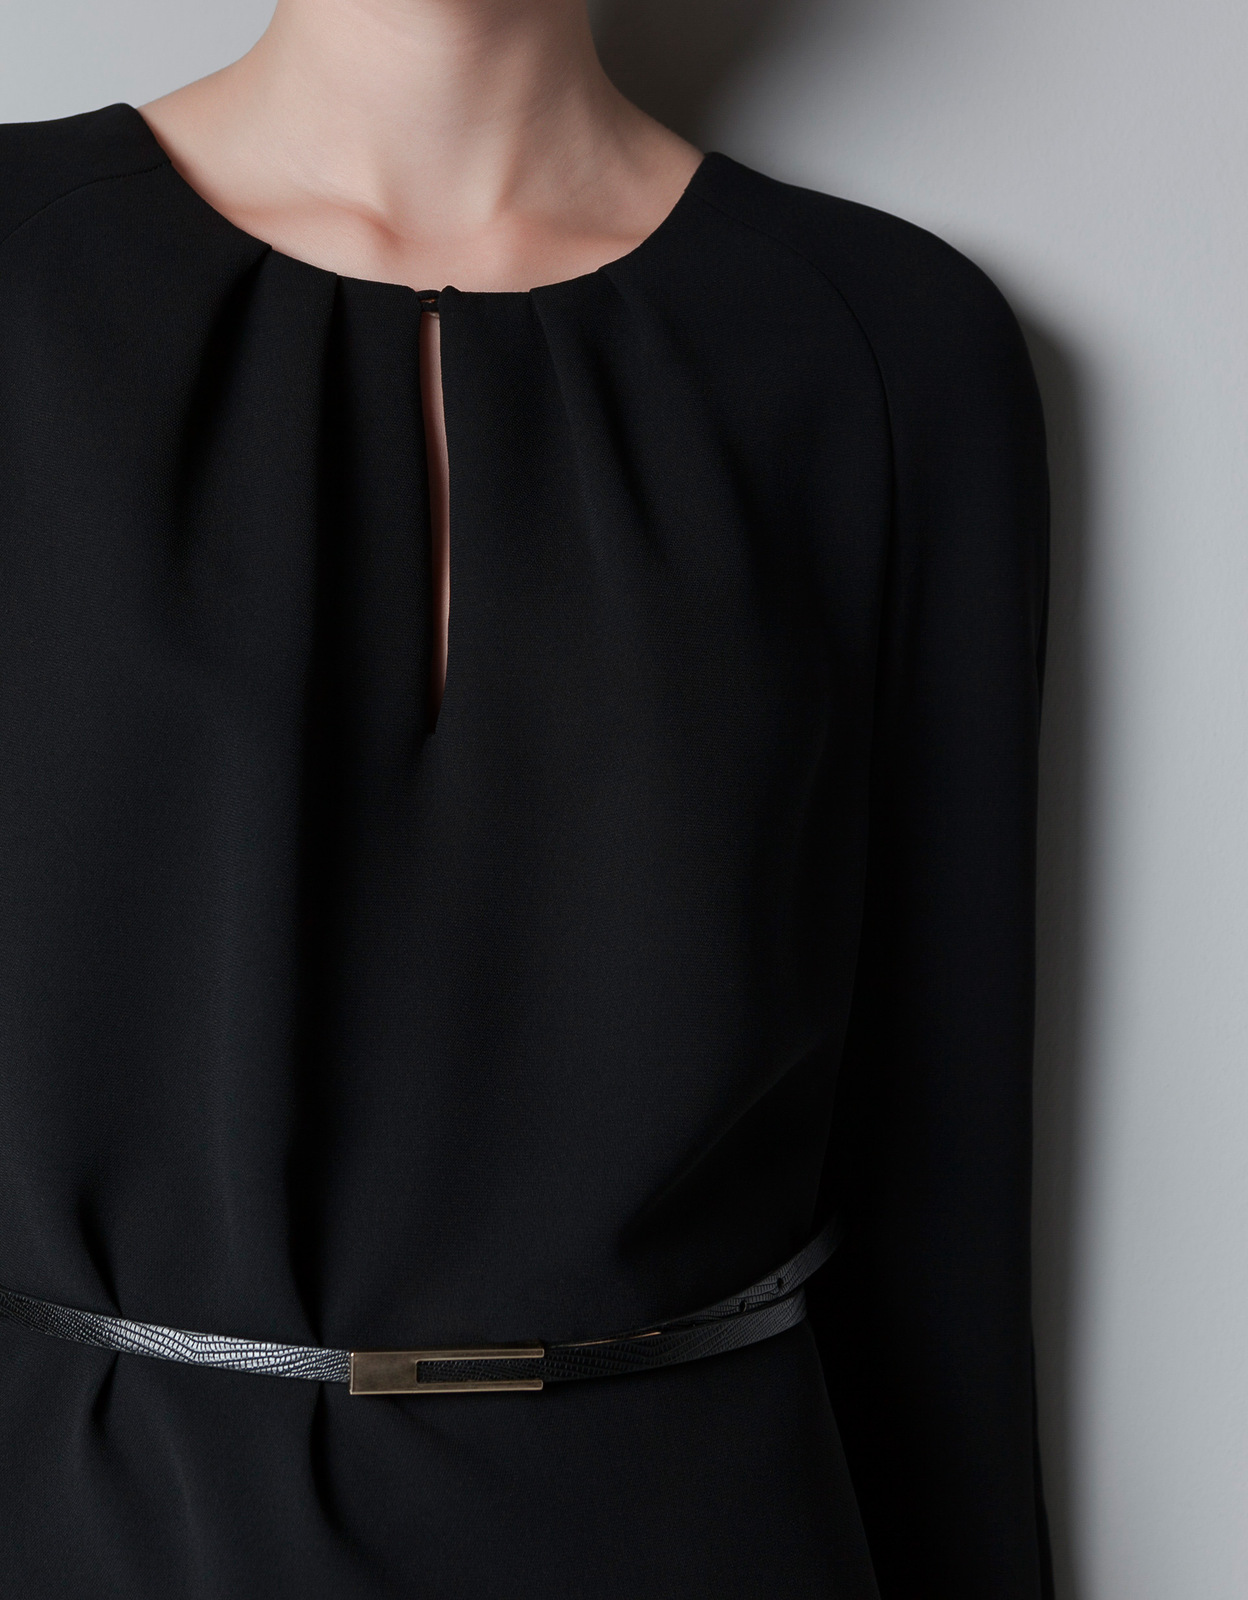 Zara csepp kivágású fekete ruha 2012.10.21 fotója